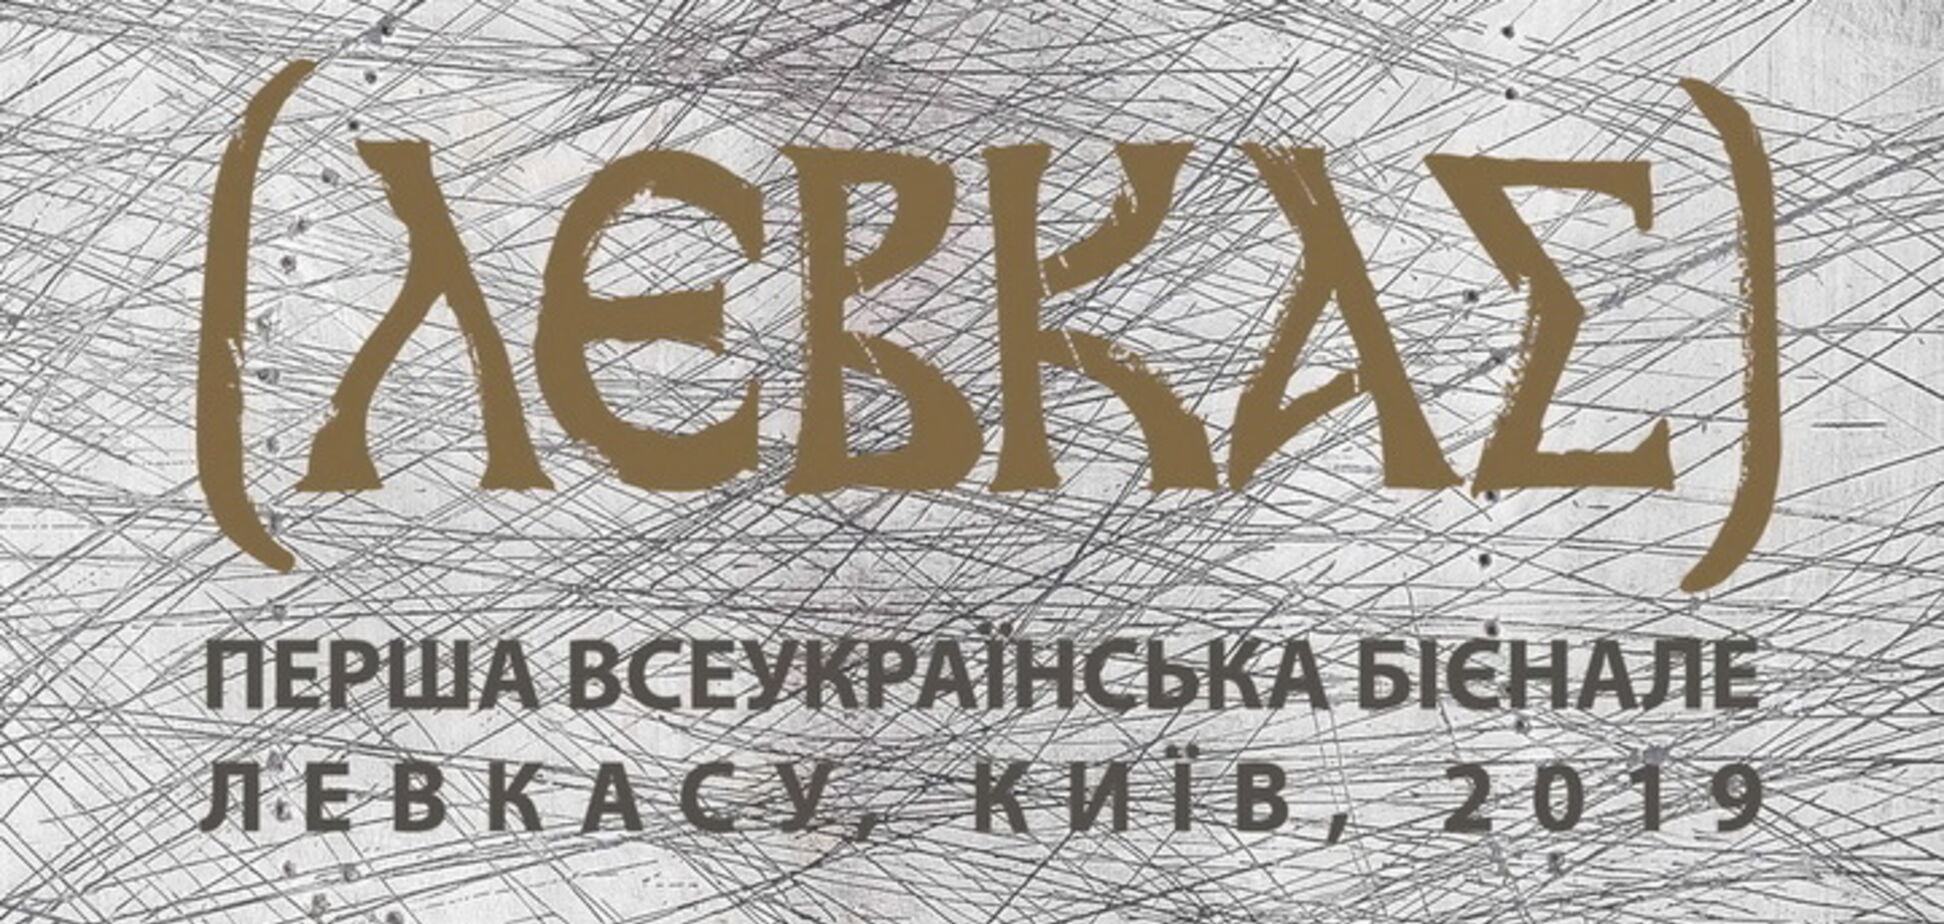 Открытие выставки: 'Первая Всеукраинская Биеннале Левкаса 2019'